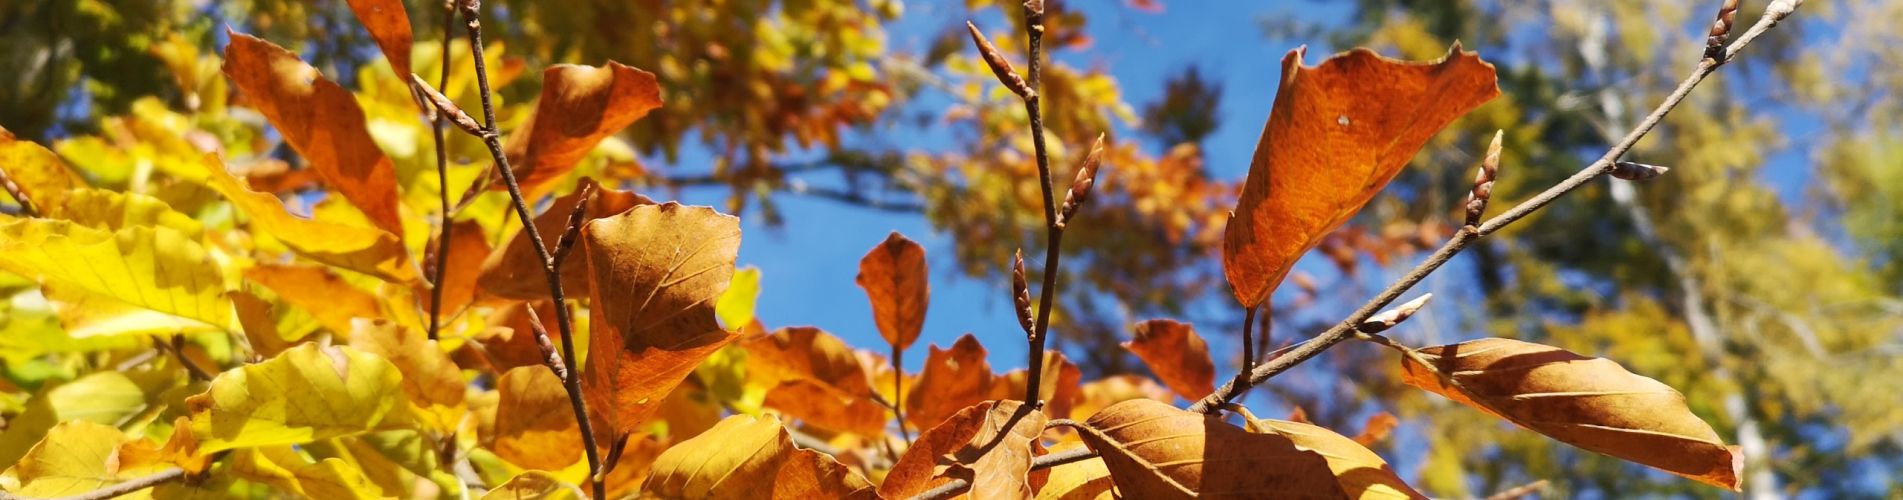 Bayerischer Wald: Blätter im Herbst